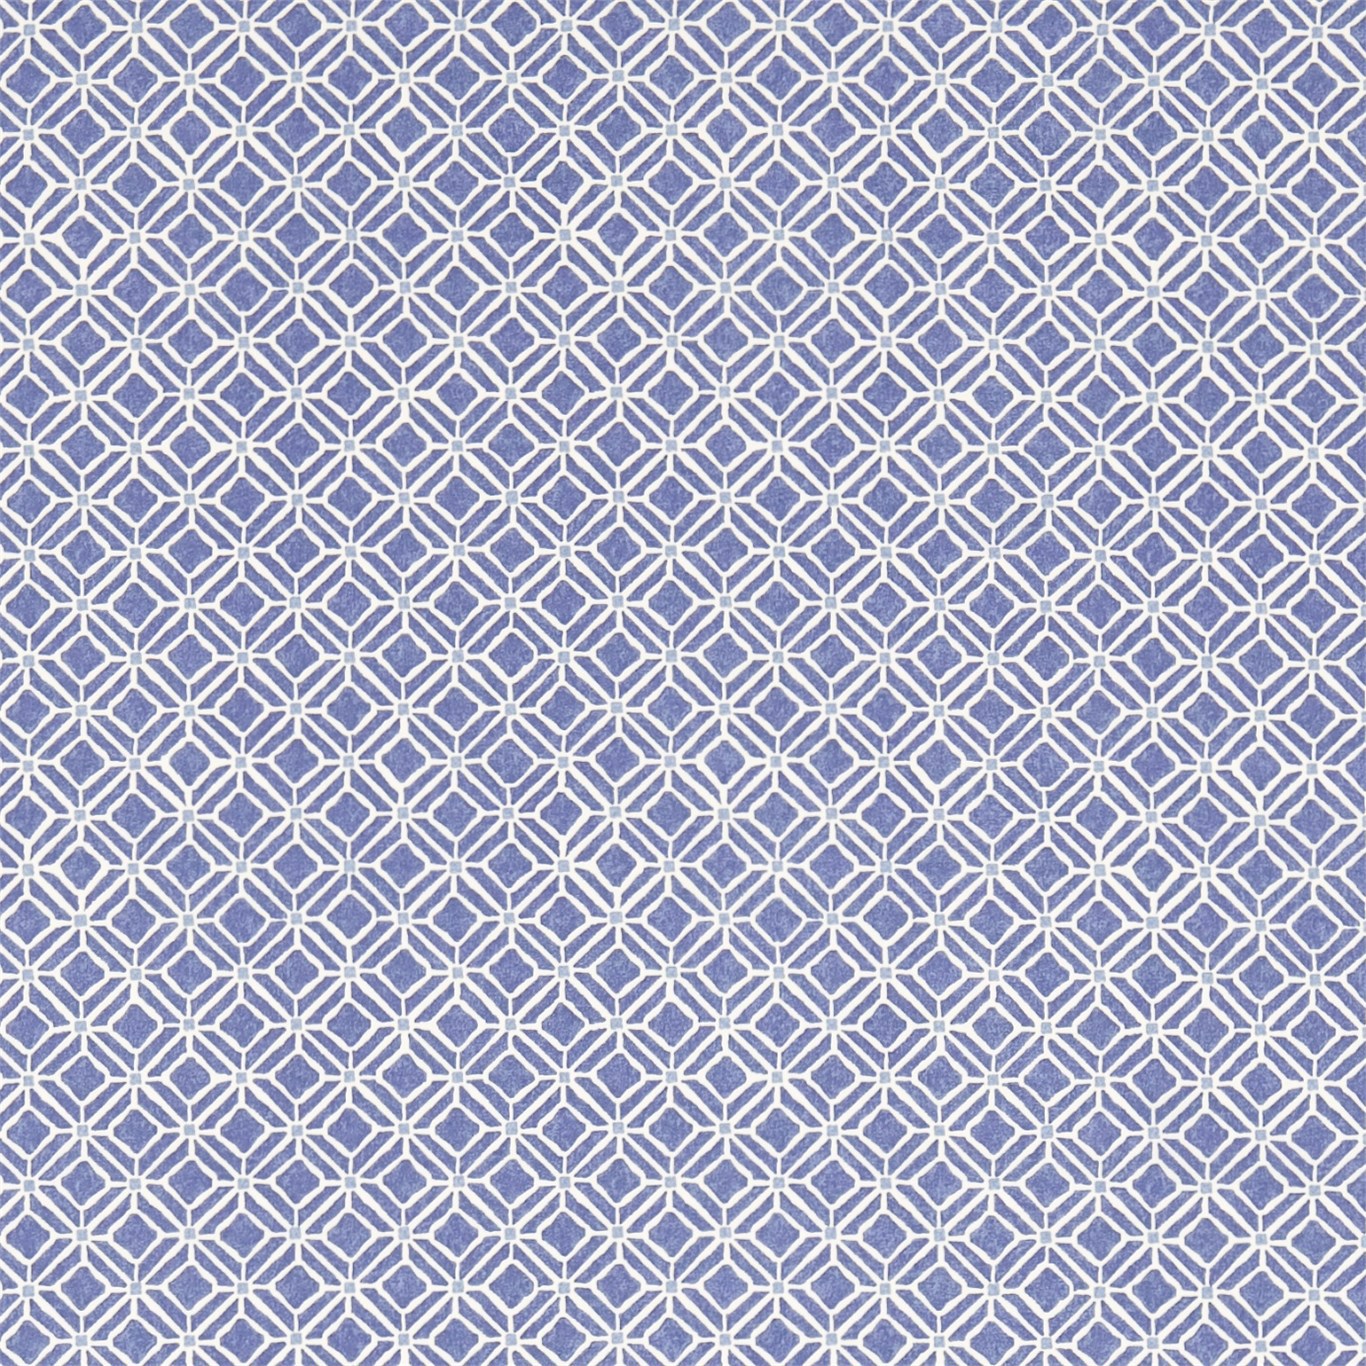 Fretwork Indigo/Blue Fabric by SAN